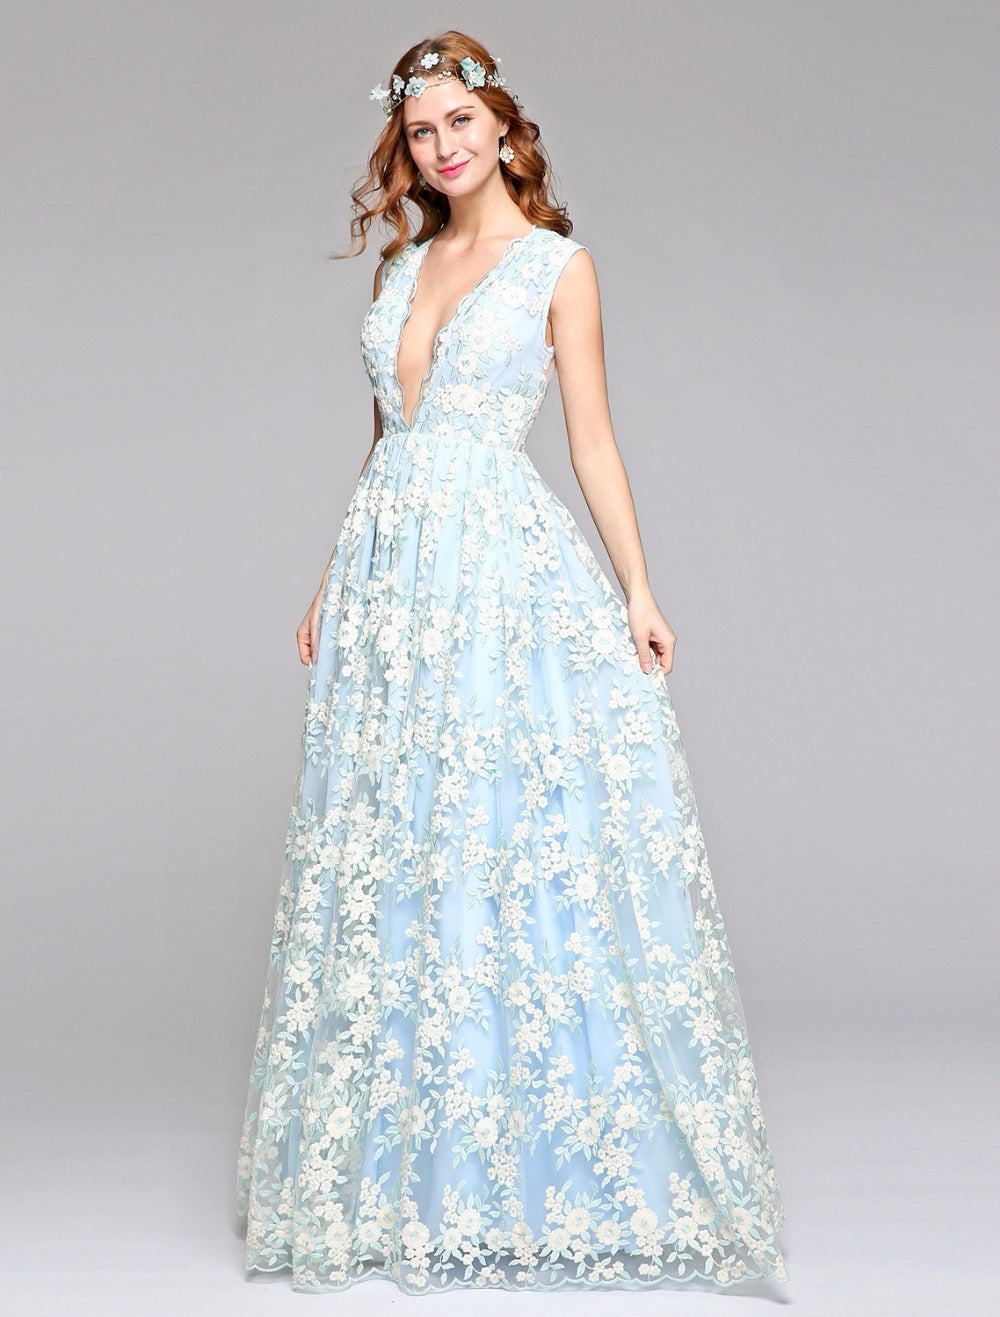 blue floral dresses for wedding